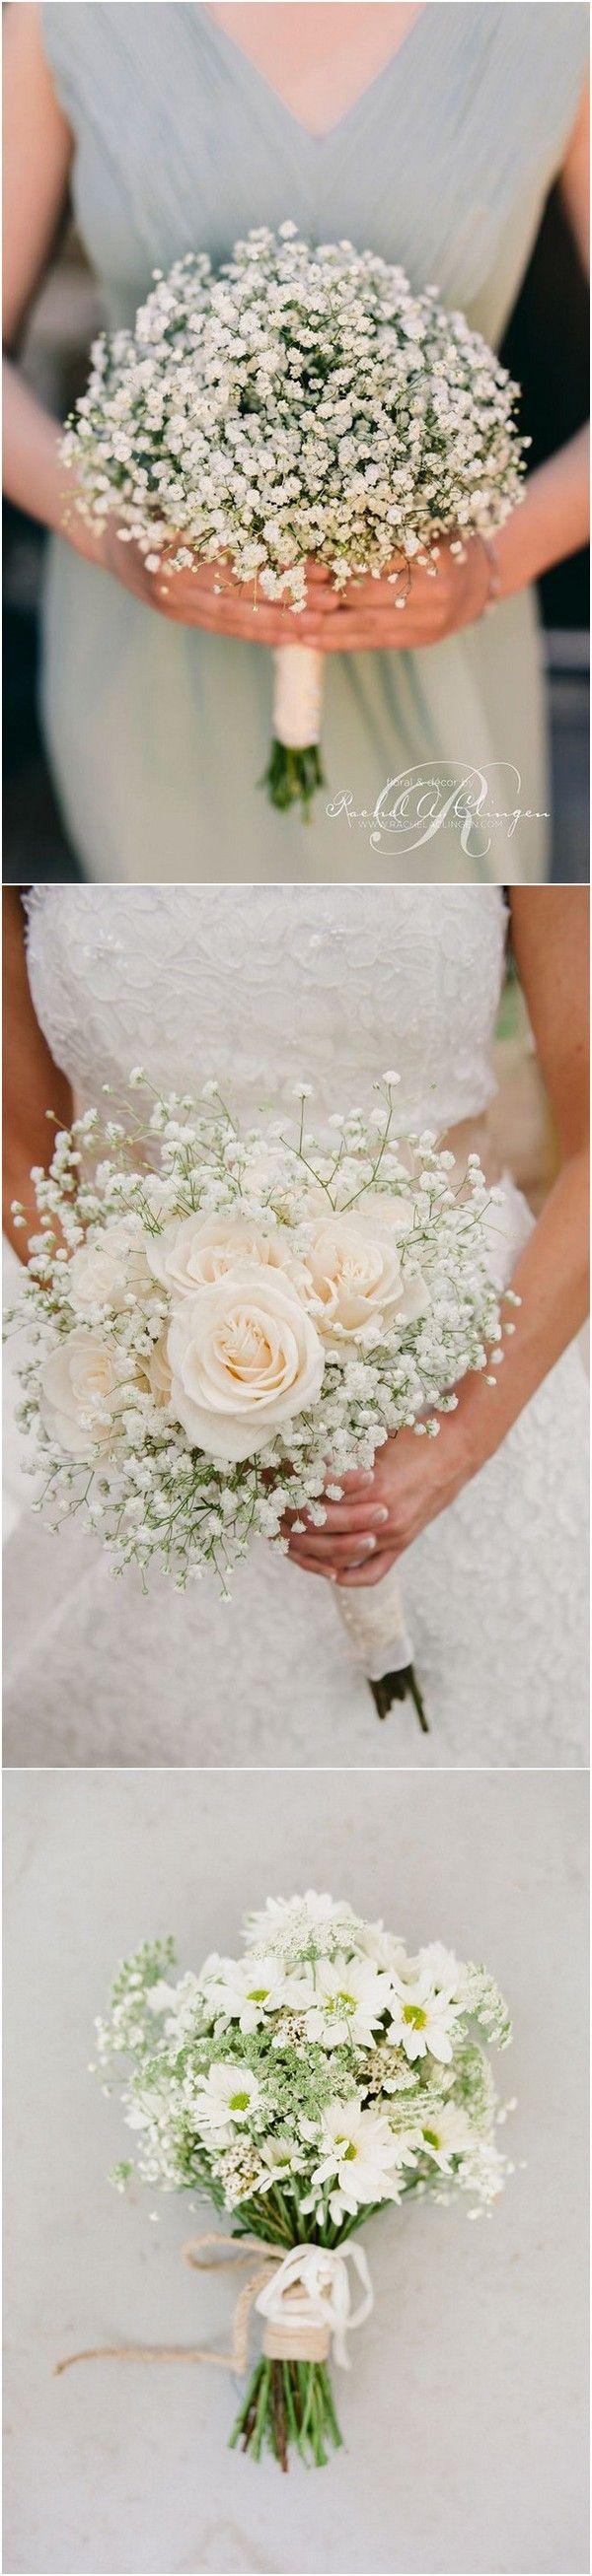 Mariage - Wedding Flowers-32 Baby's Breath Wedding Ideas